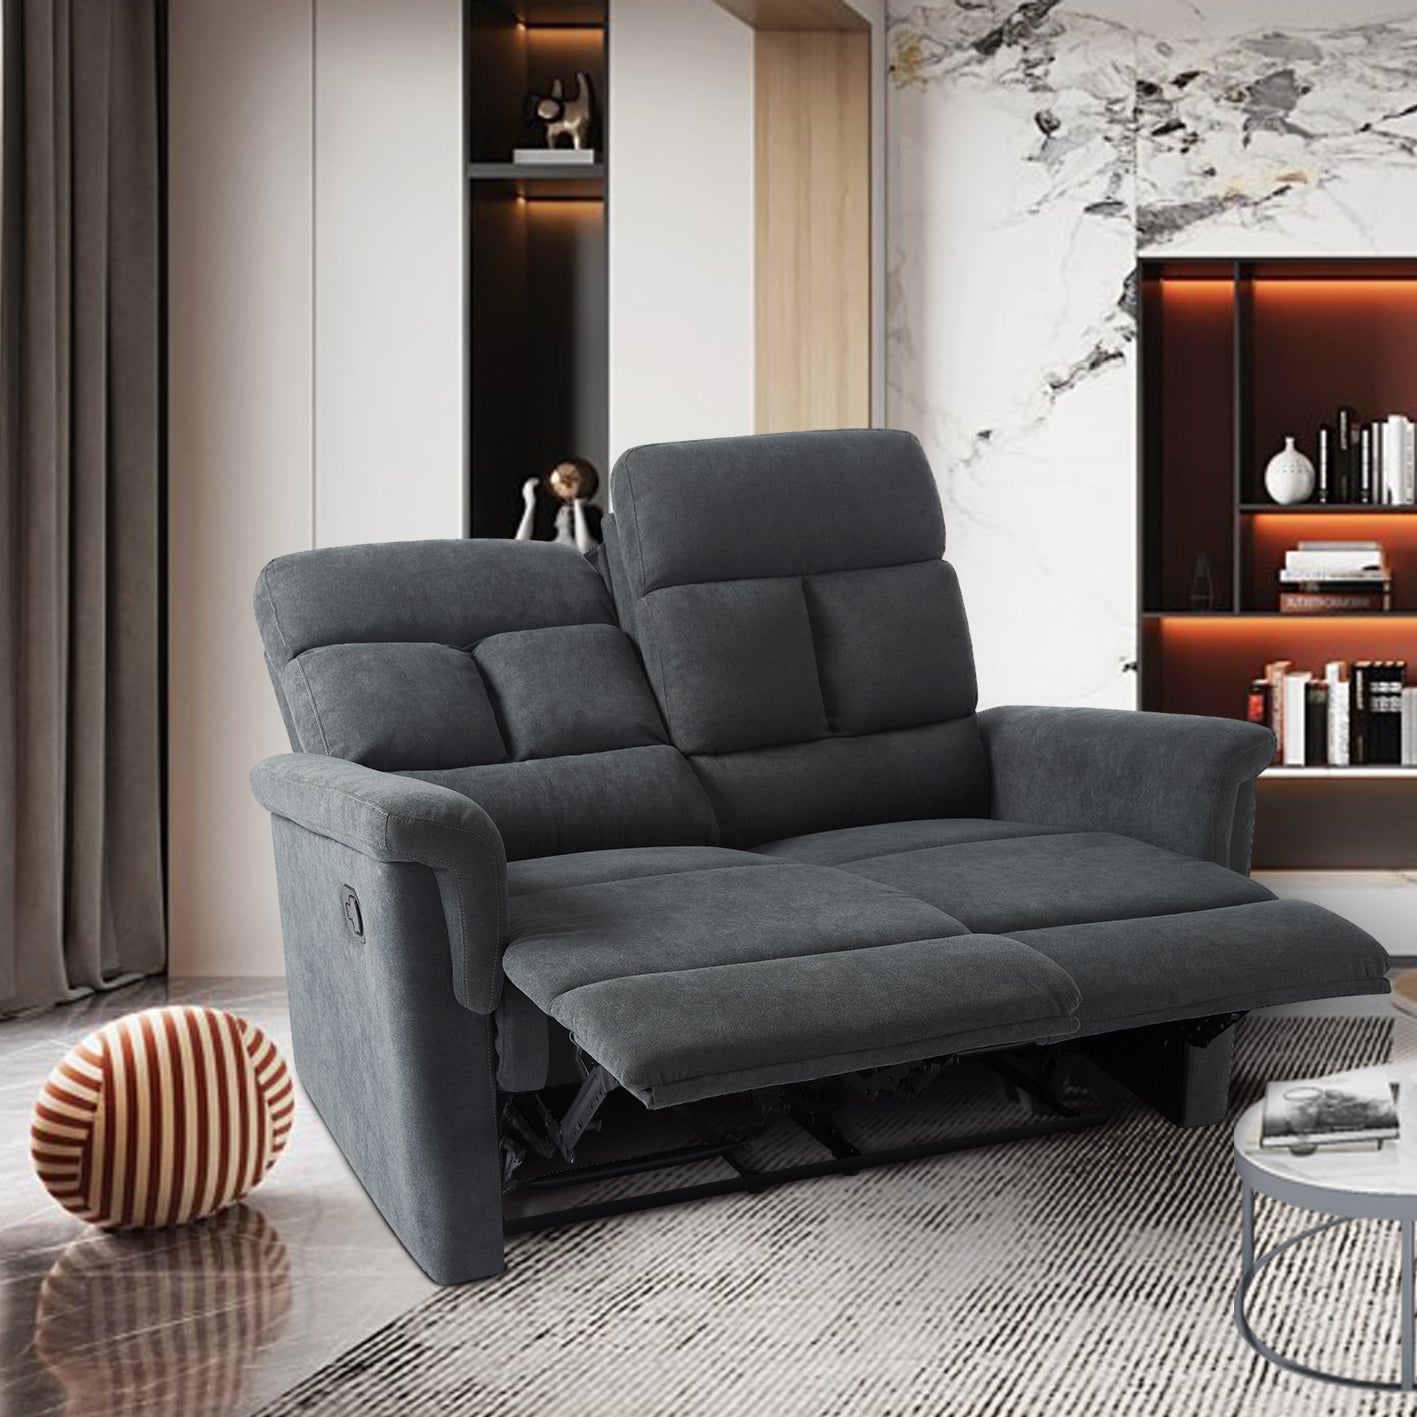 2 Seater Reclining Sofa (Gray)